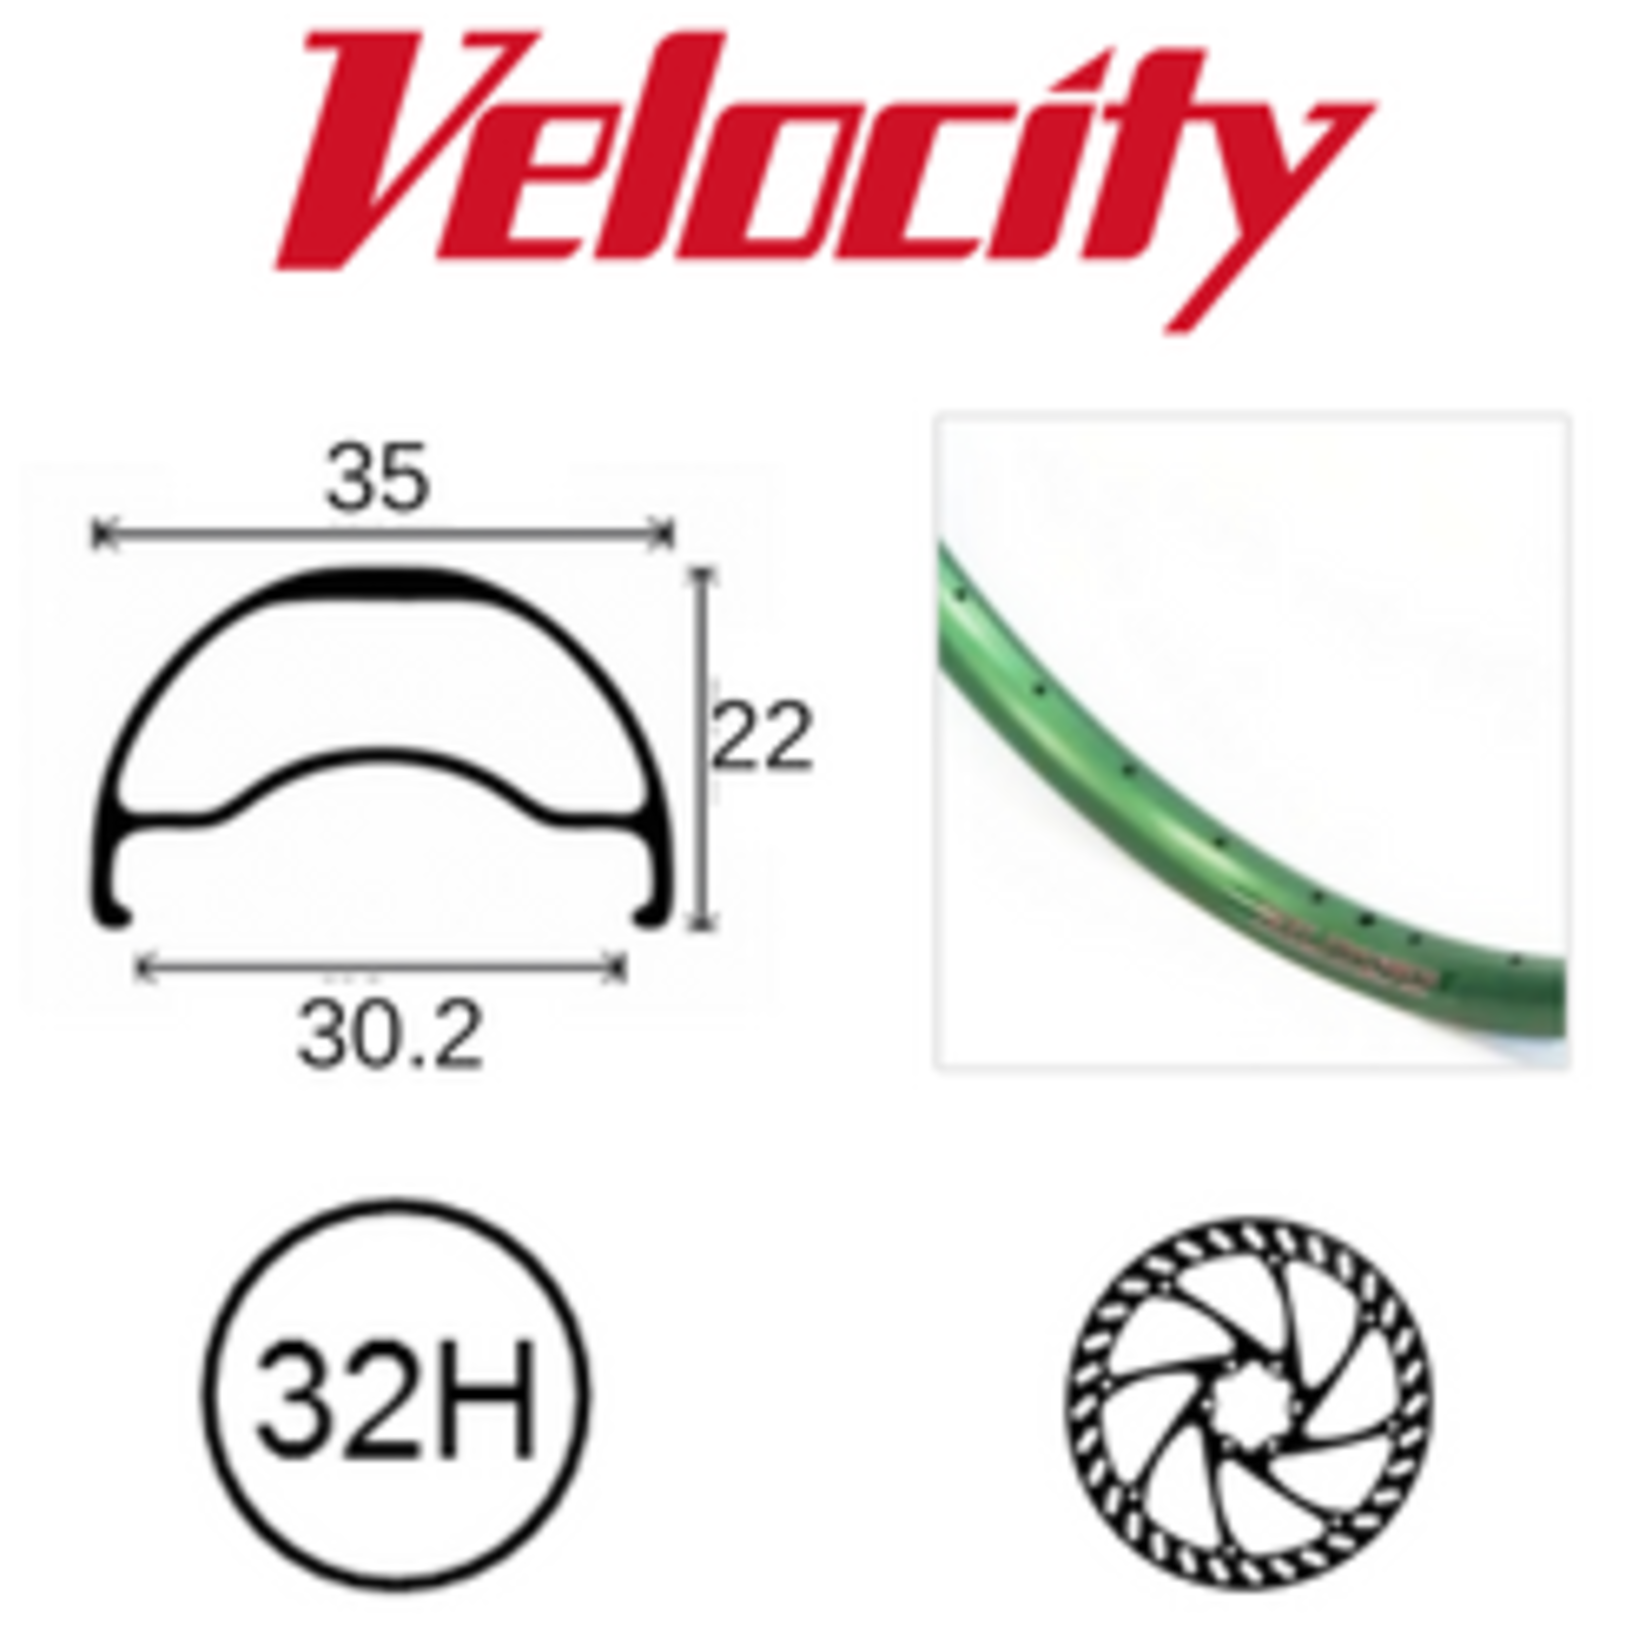 velocity Velocity Rim - Blunt 35- 700C(622) 32H - Presta Valve - Disc Brake - D/W - Green